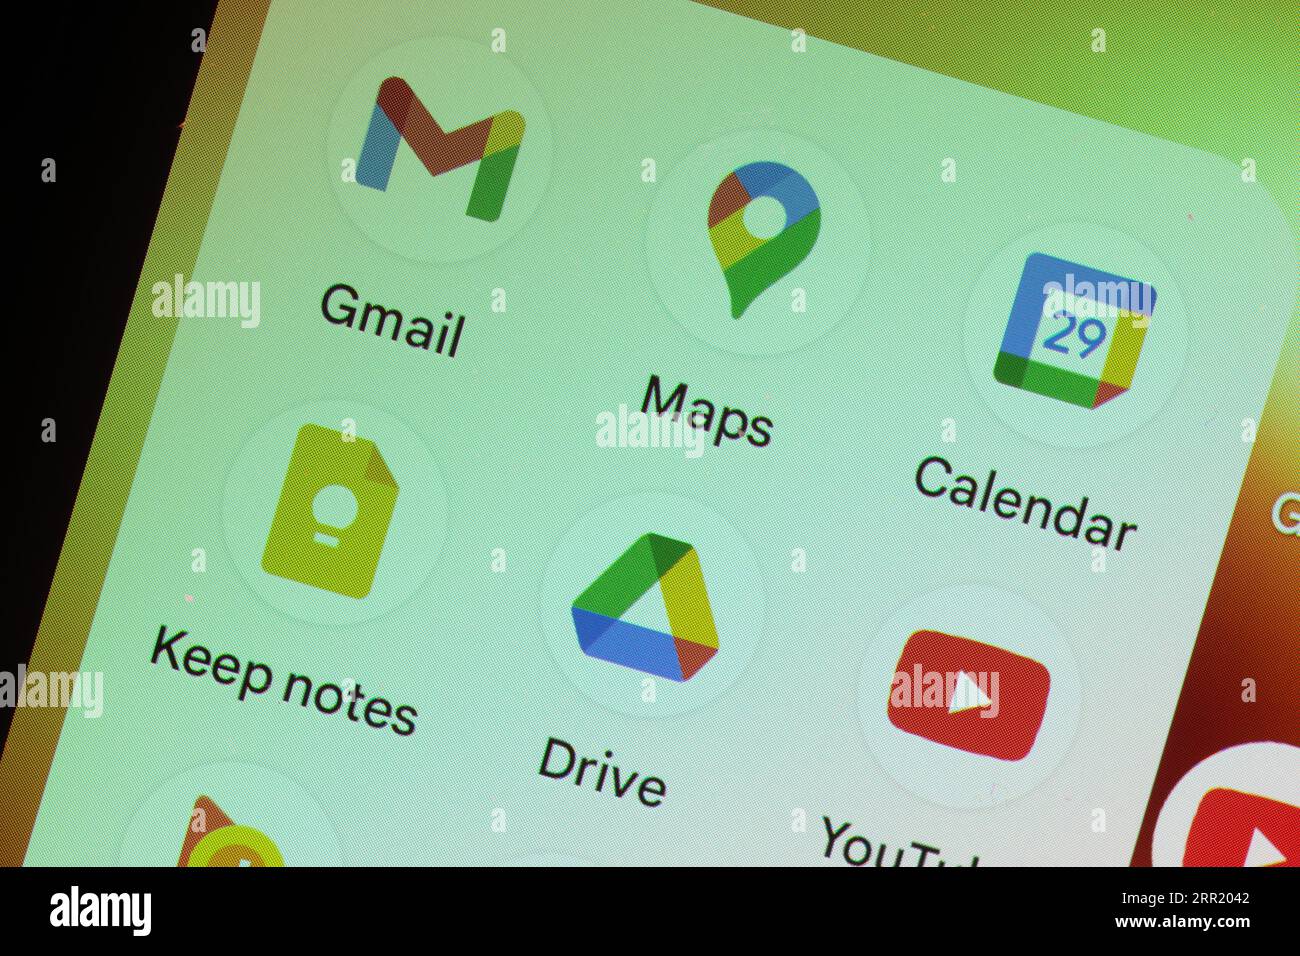 Applications Google, Gmail, cartes, Calendrier, conserver des notes, lecteur et écran YouTube du téléphone Pixel android Banque D'Images